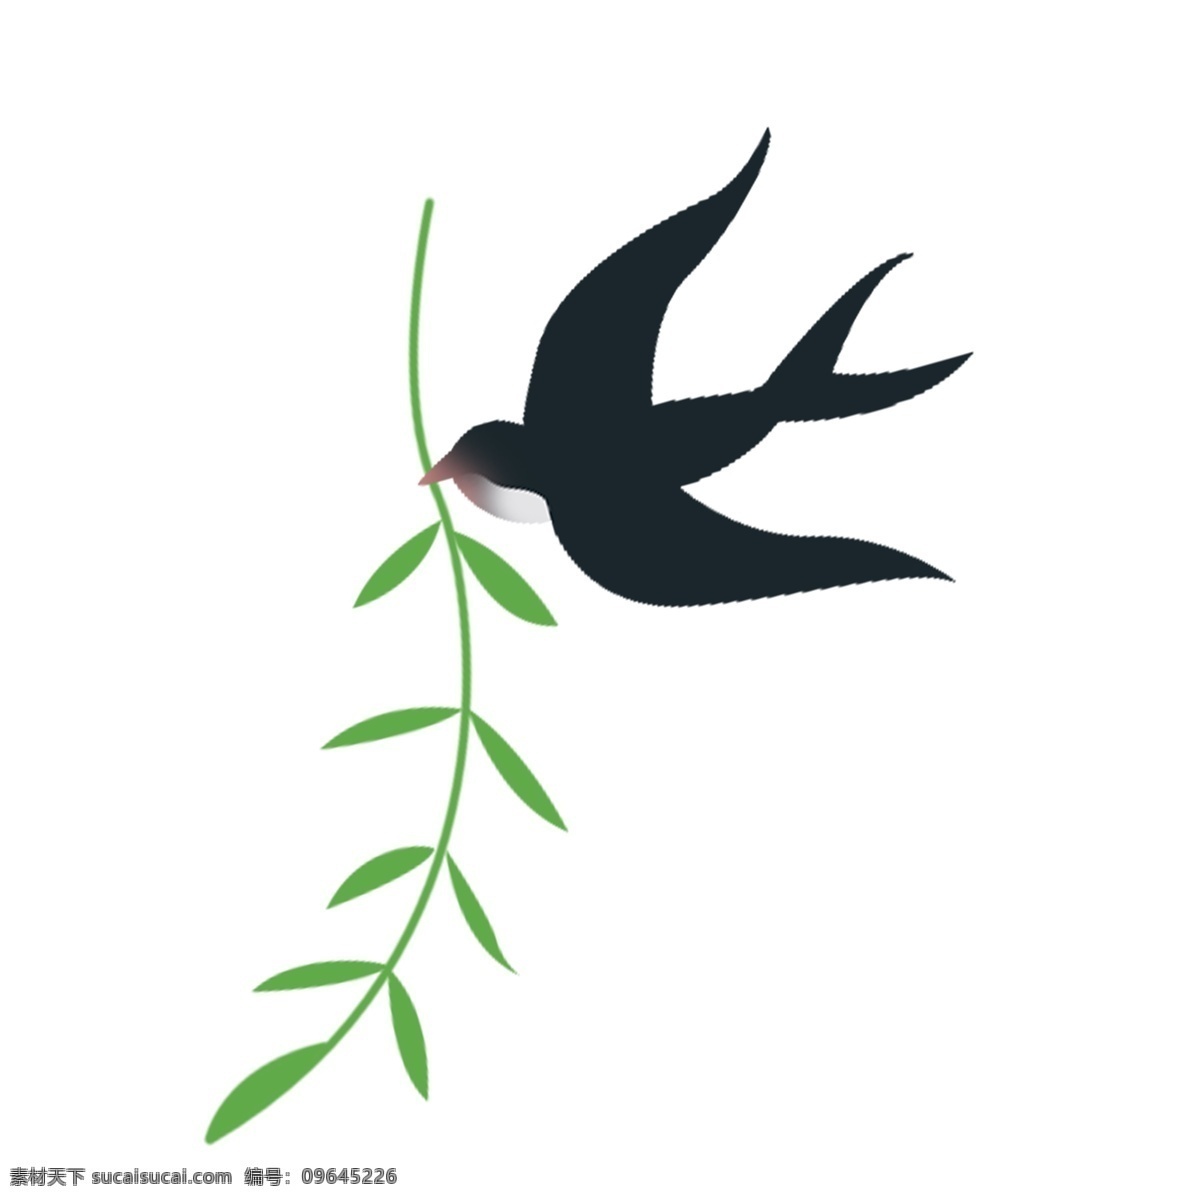 小燕子 叼 植物 免 抠 图 绿色植物 飞翔的燕子 卡通动物 动物插画 可爱的燕子 飞翔的鸟儿 卡通 黑色 免抠图